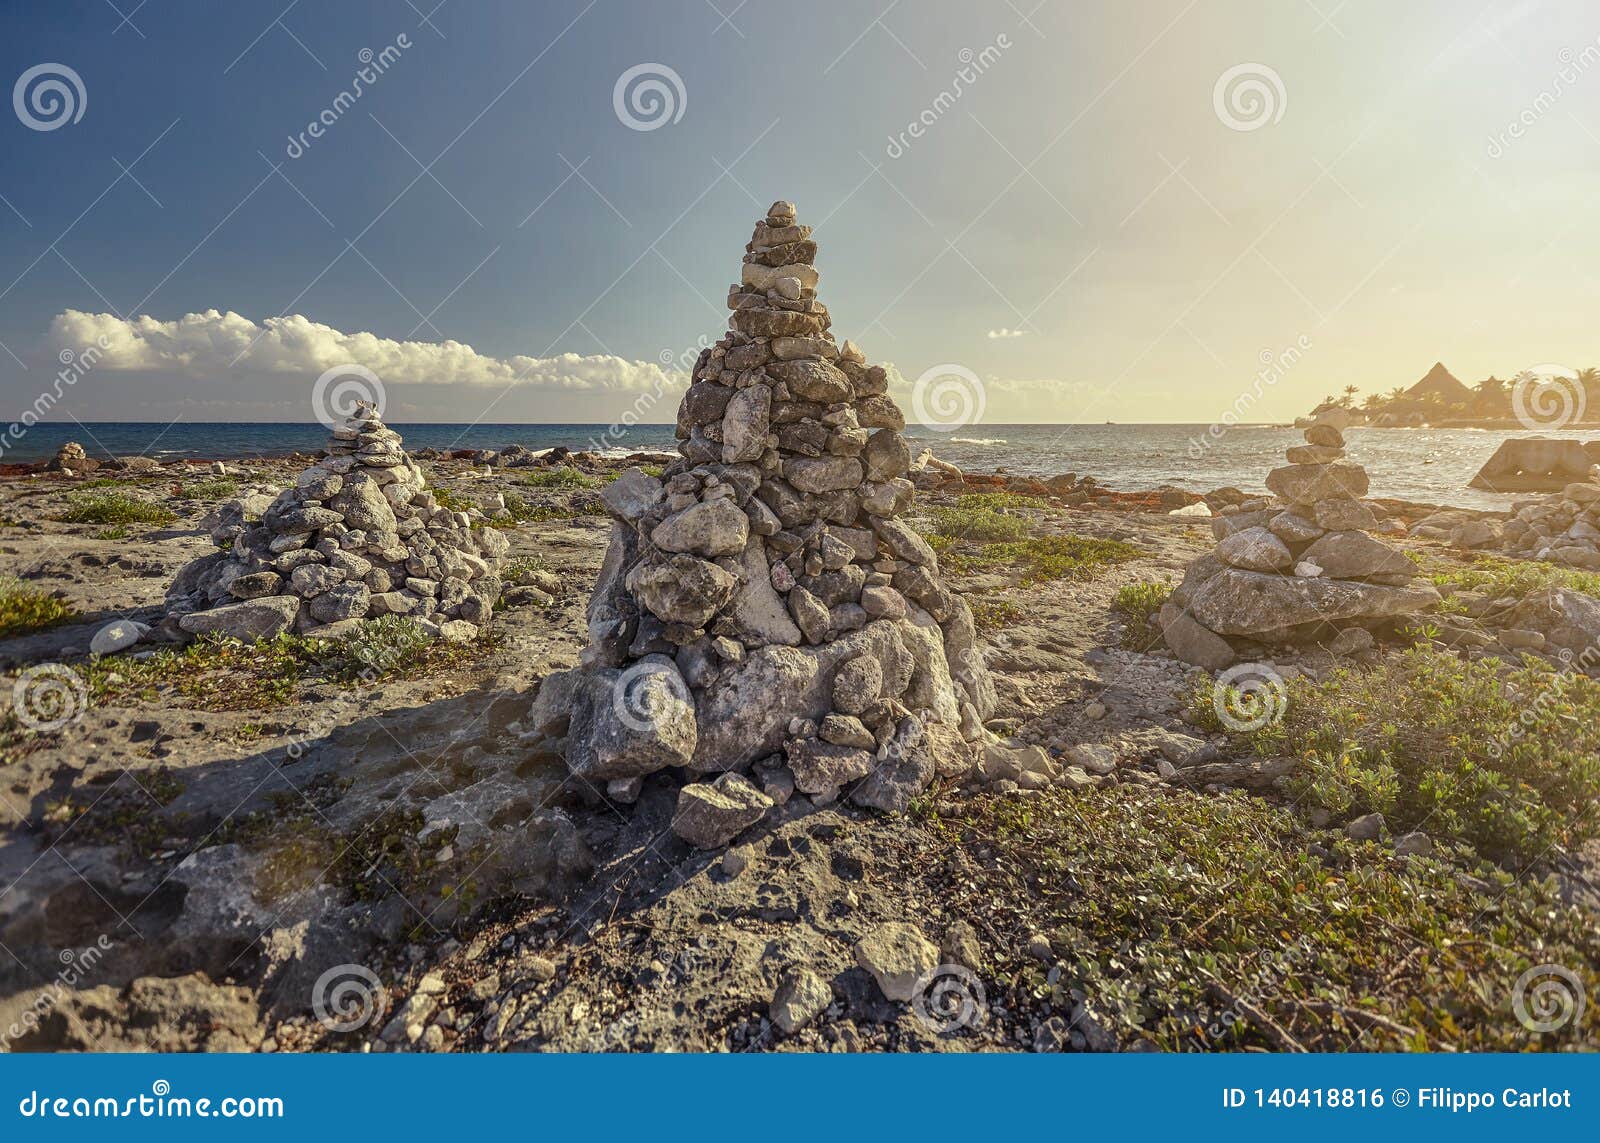 stacks of zen rocks in puerto aventuras`s coast 2